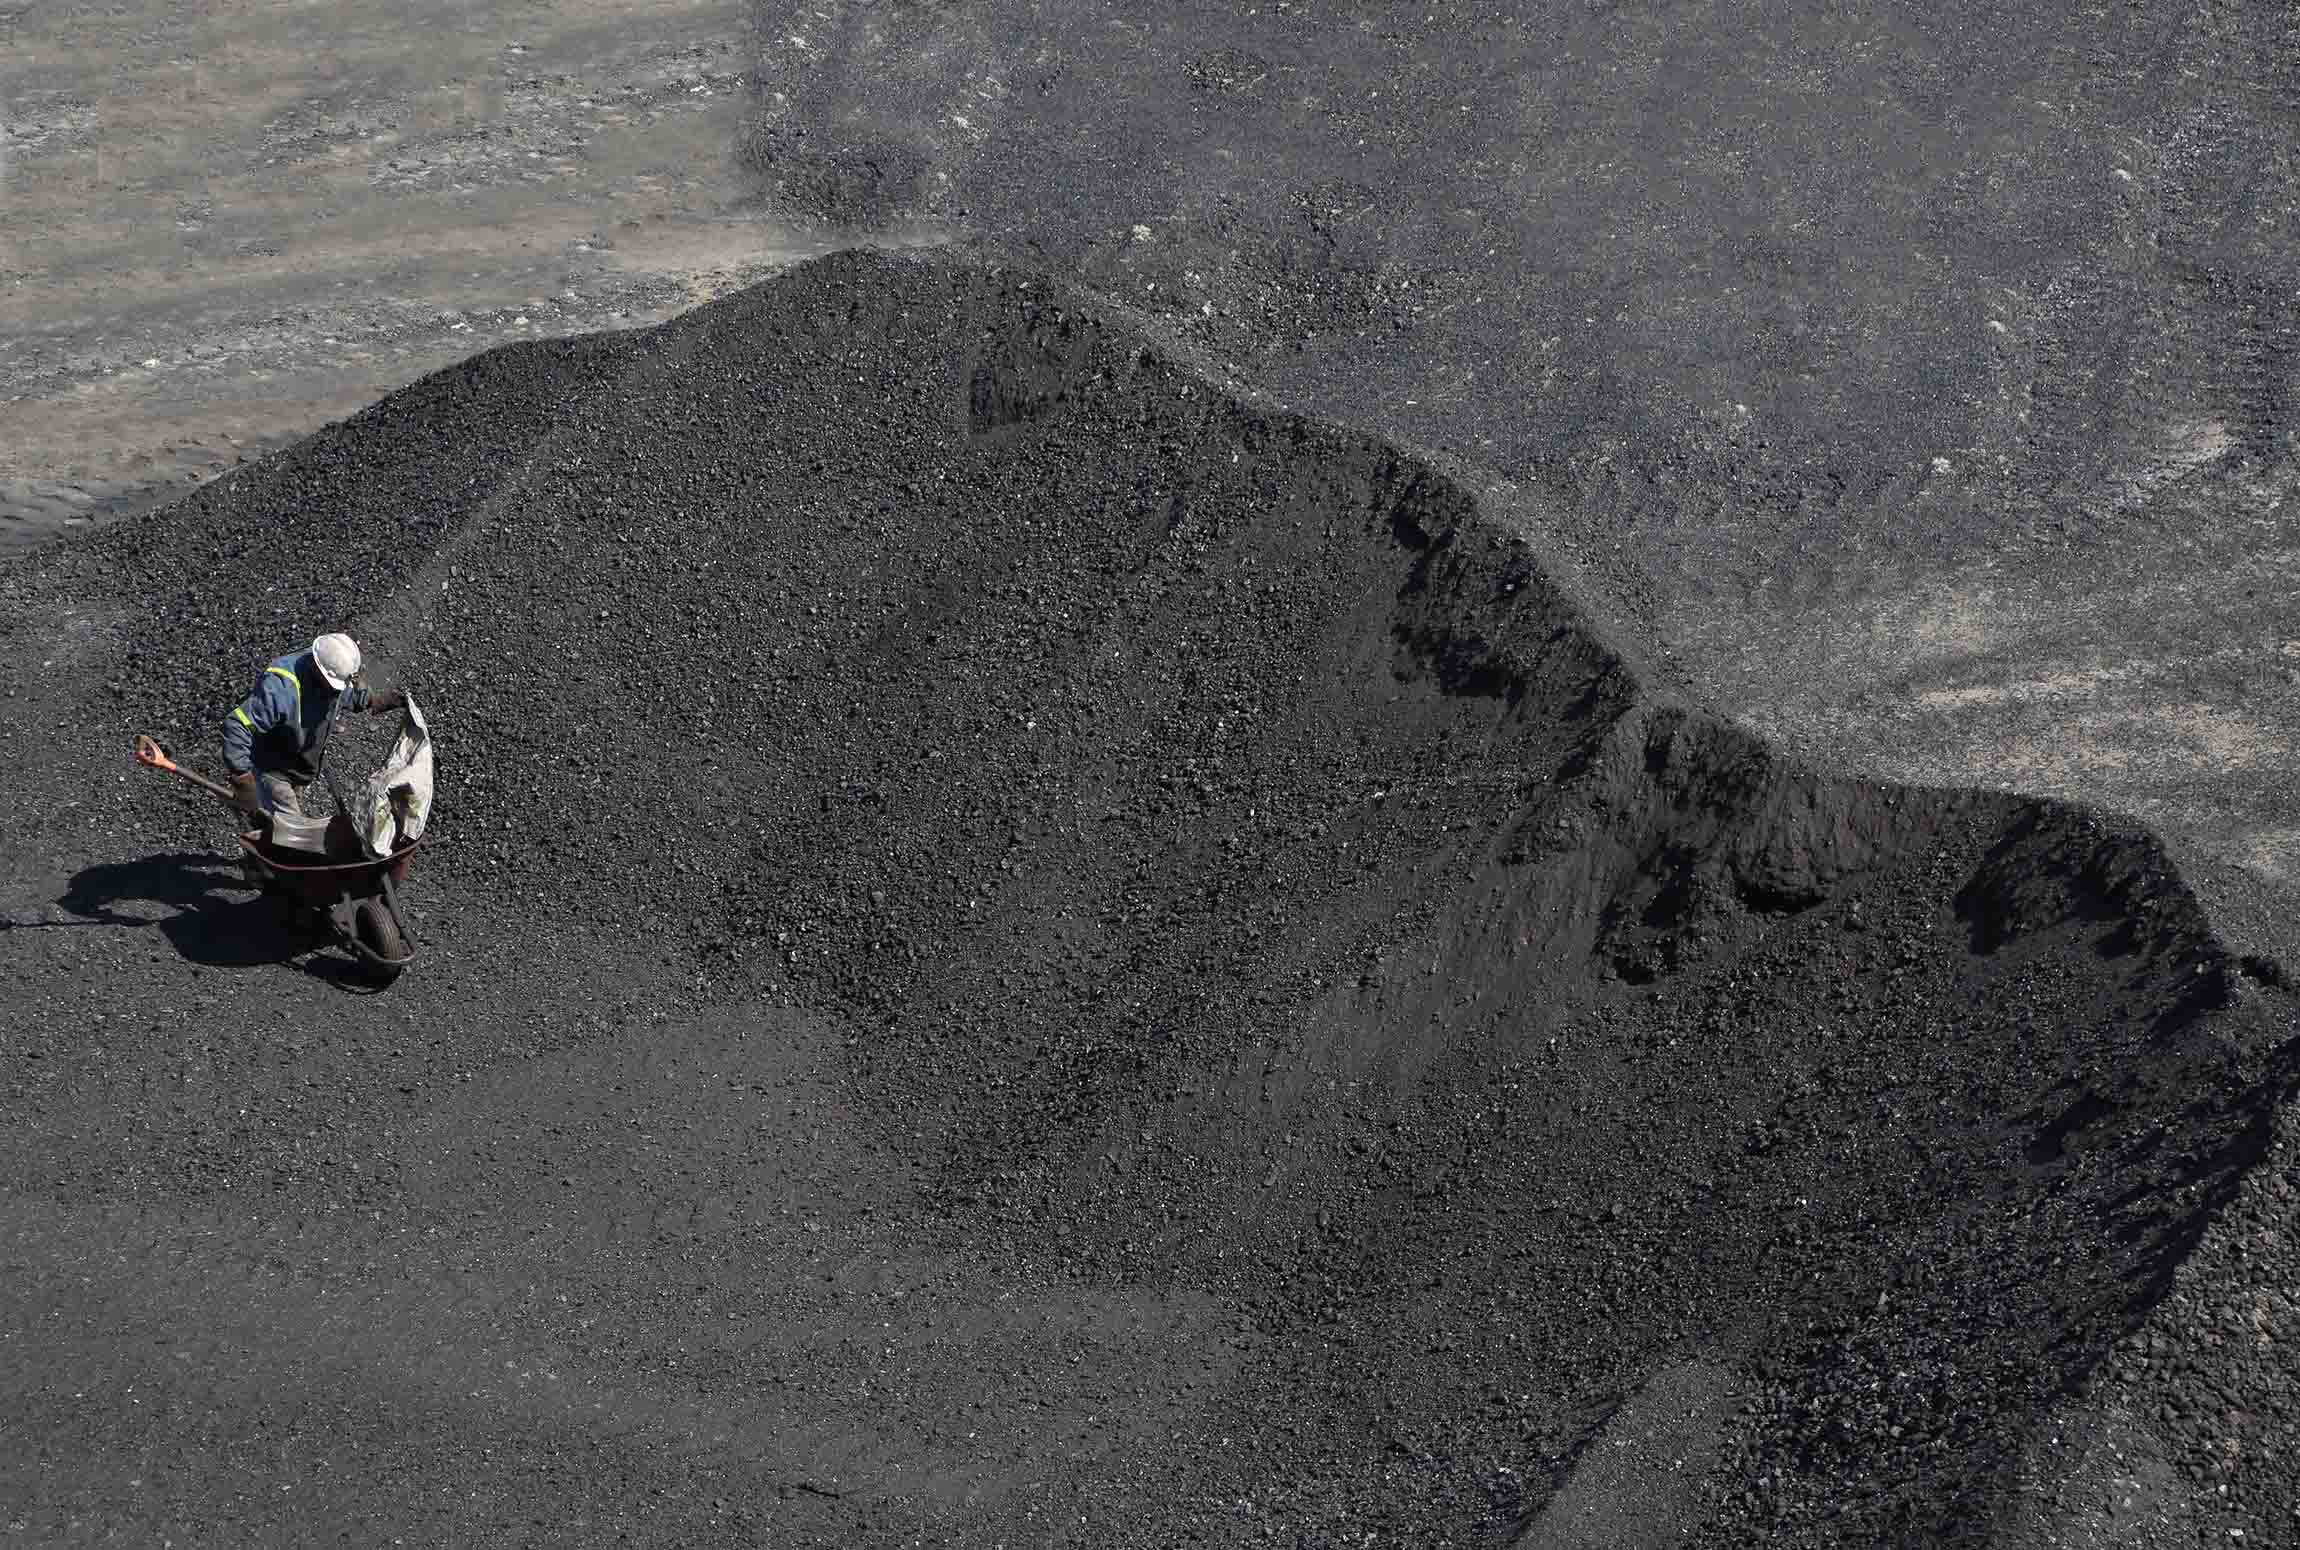 En Coahuila, al noreste de México, nacieron cinco municipios porque en ese territorio se encontró carbón. De sus minas se extrae el 99% de la piedra negra en México.